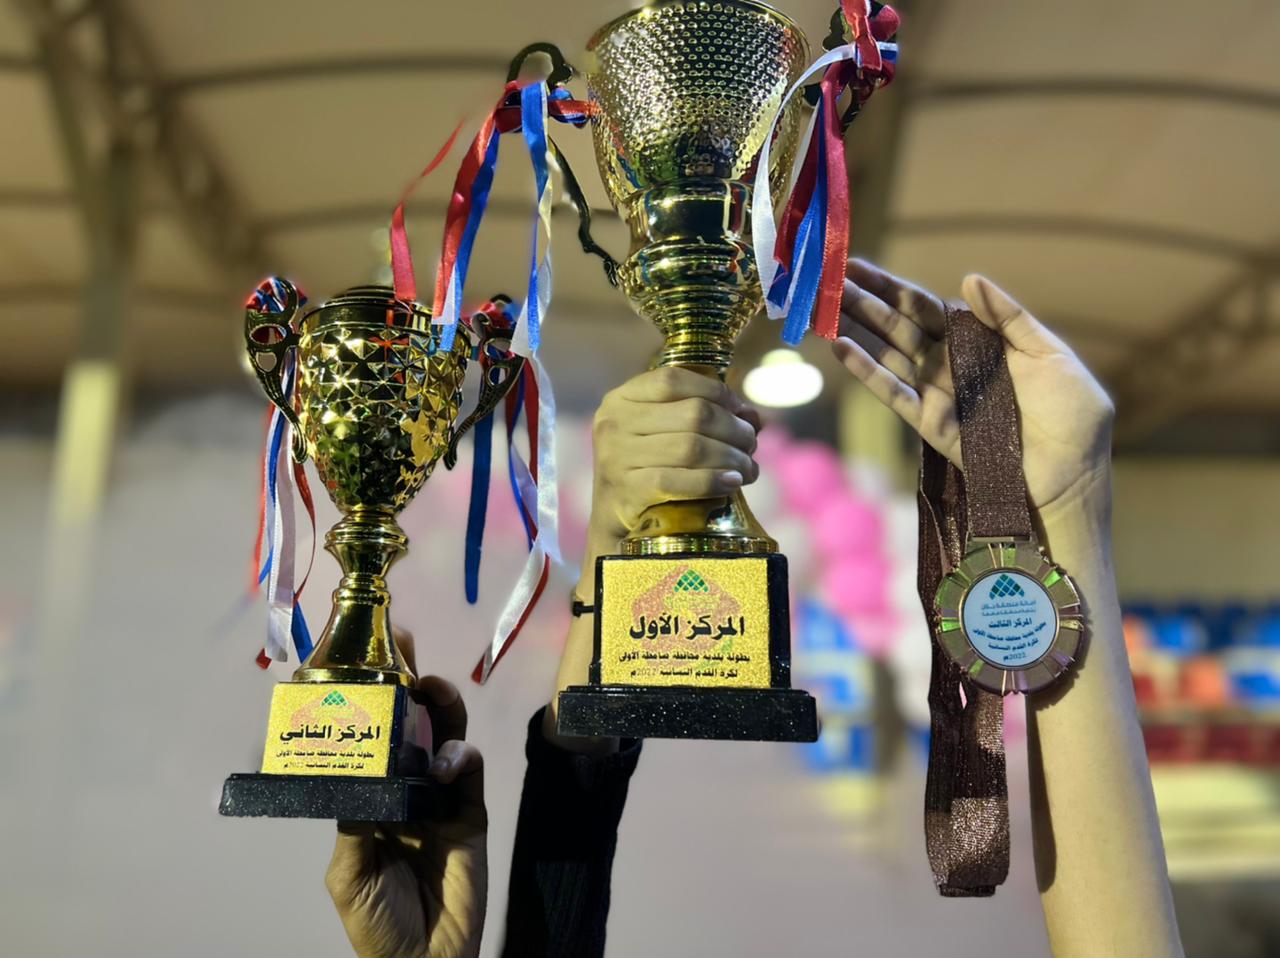 بلدية صامطة تتوج فريق العطاء النسائي بطلاً لبطولة كرة القدم النسائية الأولى بالمنطقة